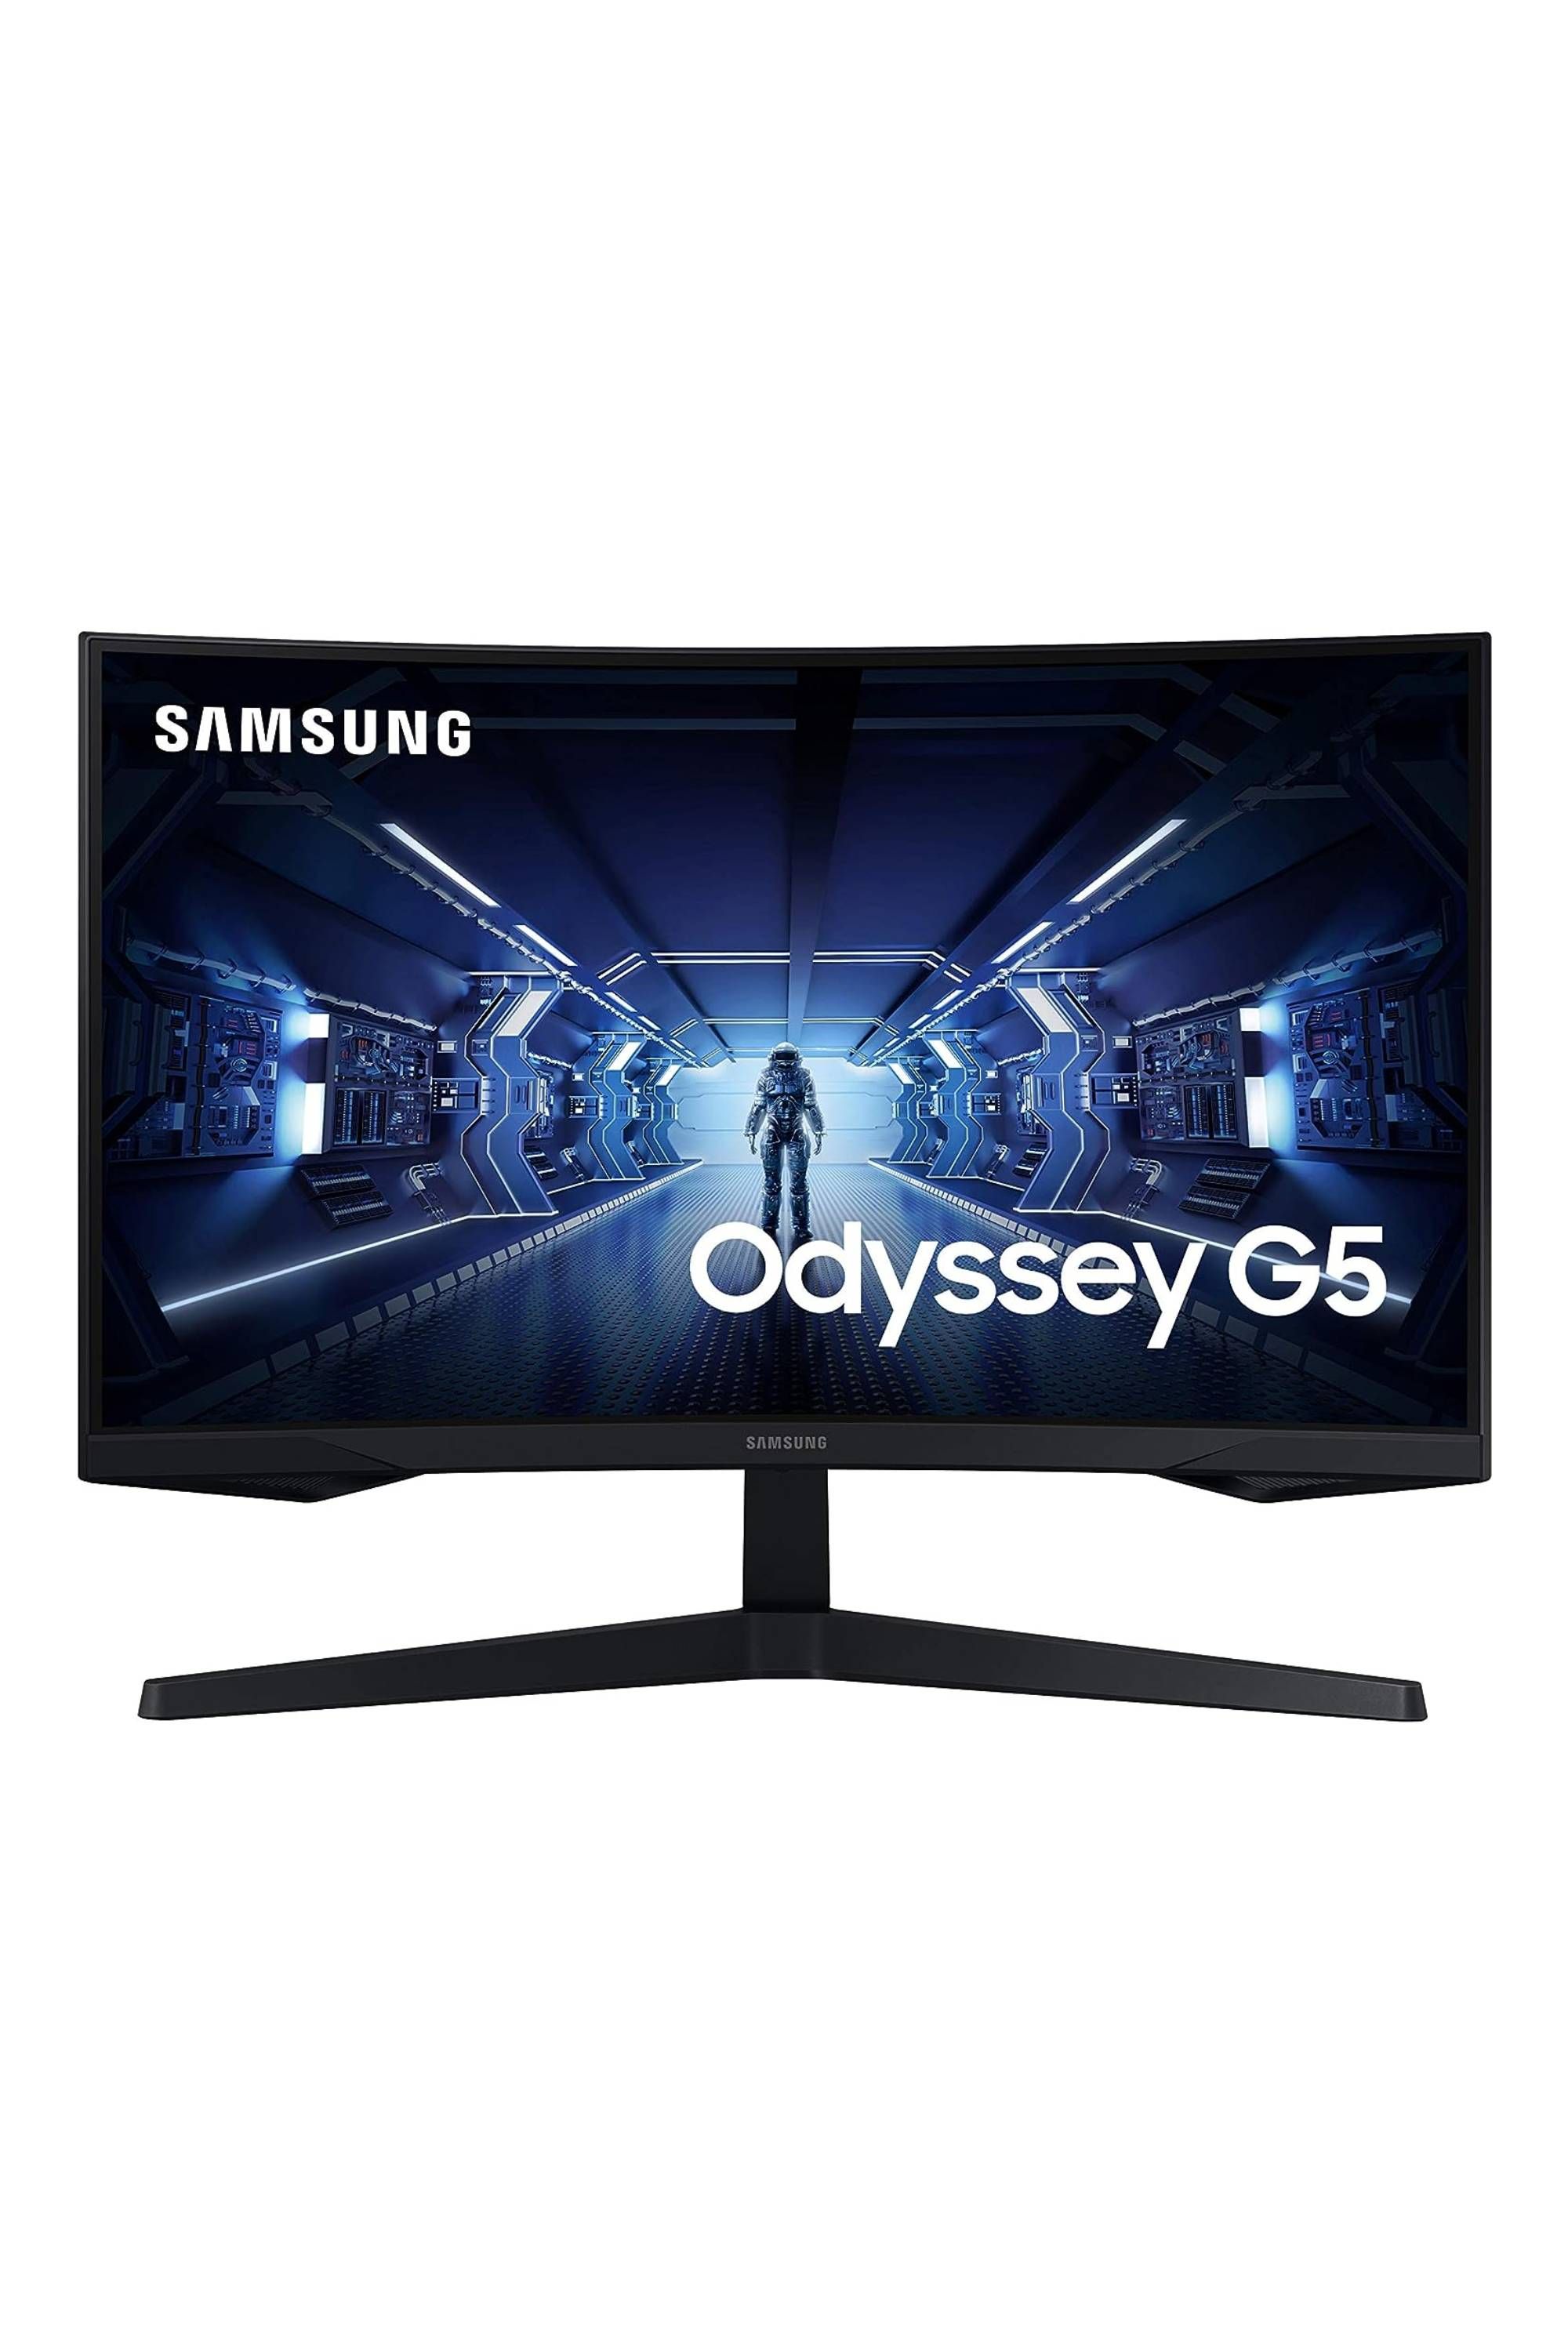 Samsung Odyssey G5 Series 27-Inch WQHD Gaming Monitor